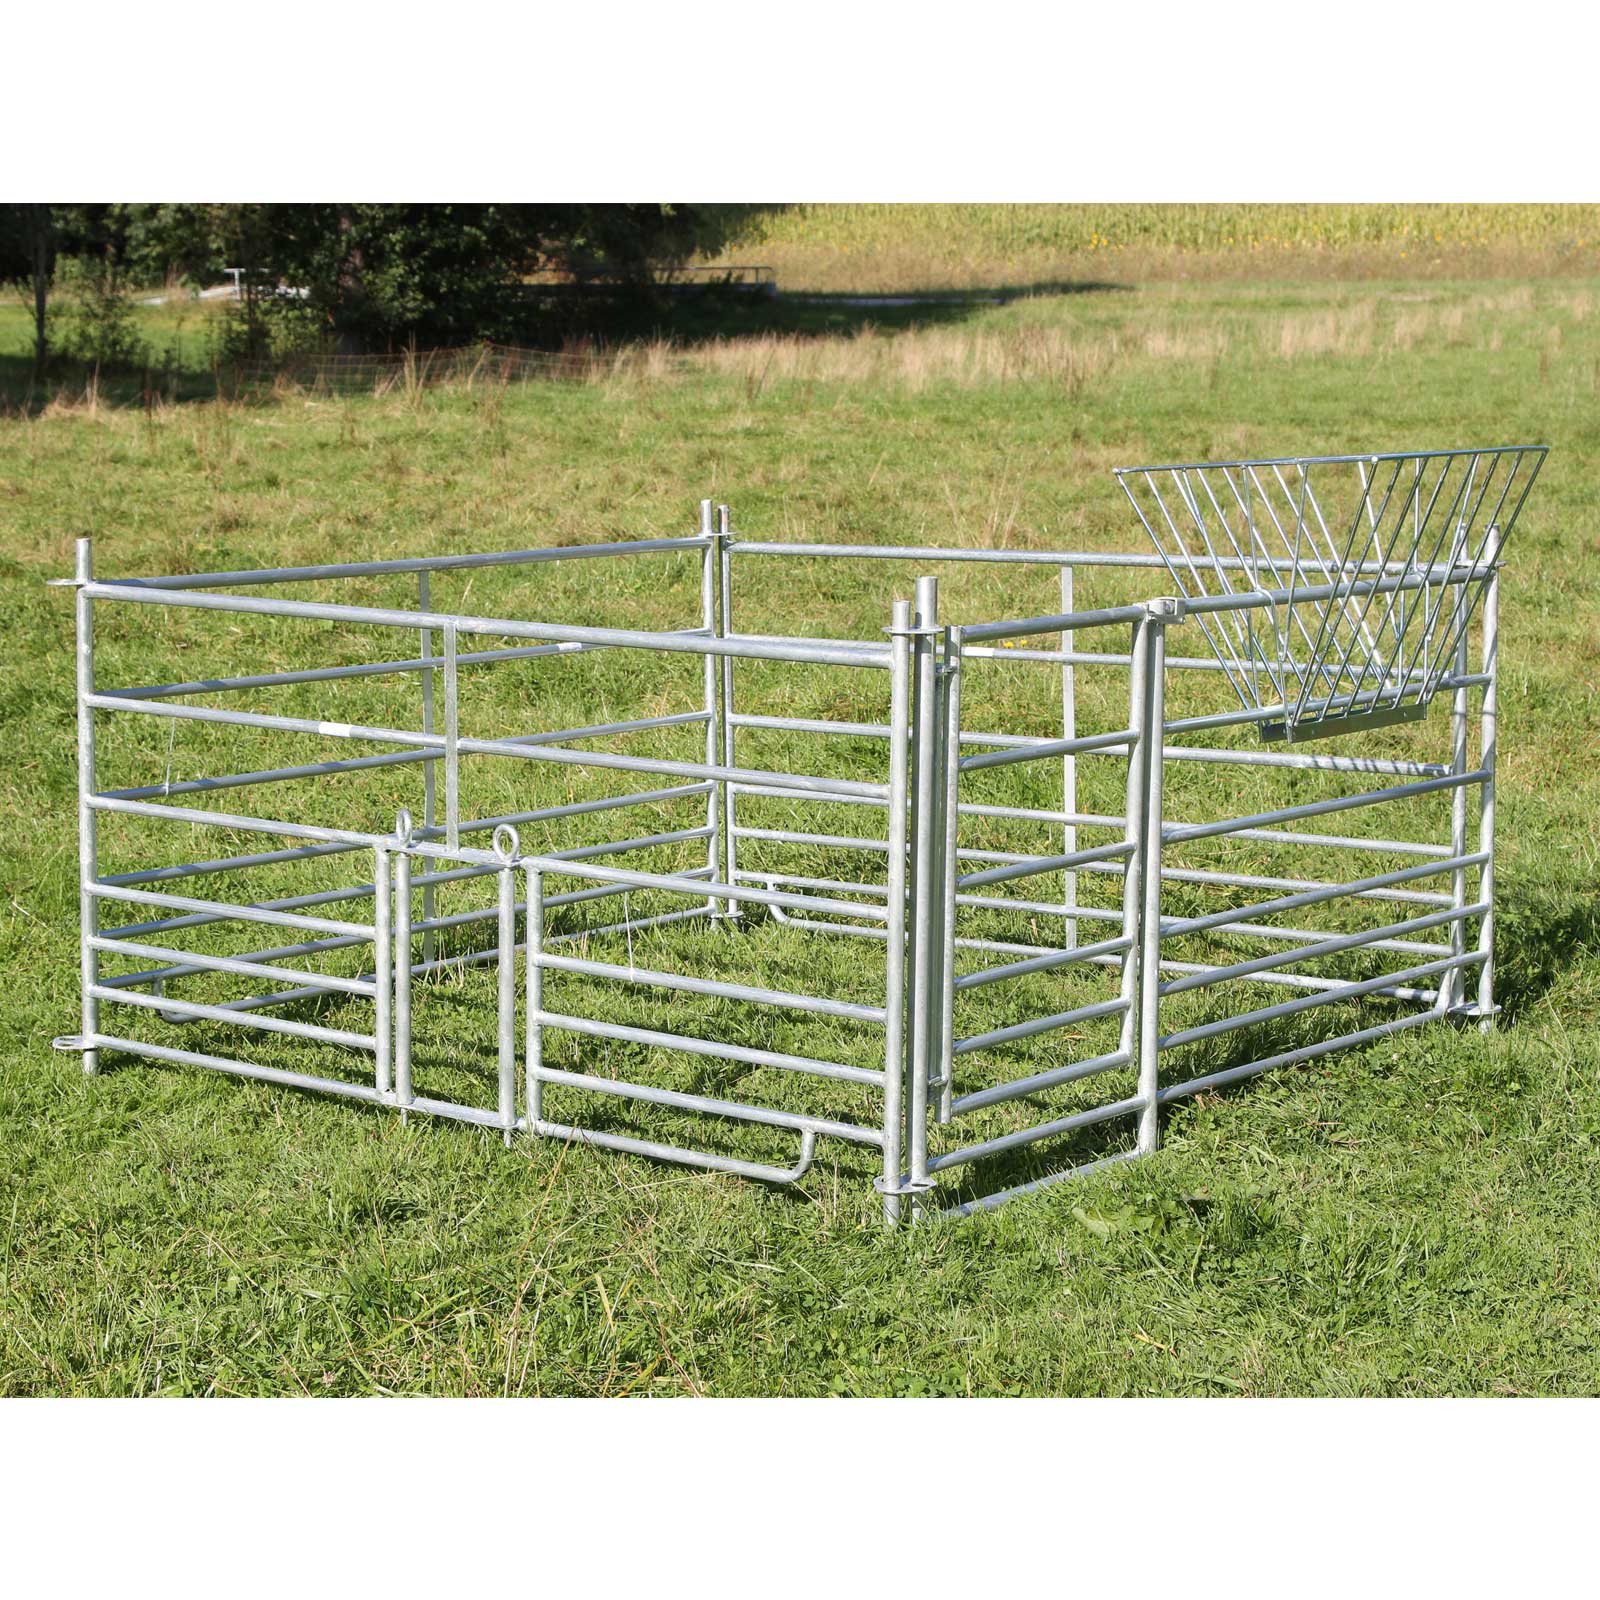 Steckfixhorde für Schafe Schafhorde verzinkt 1,37 x 0,92 m